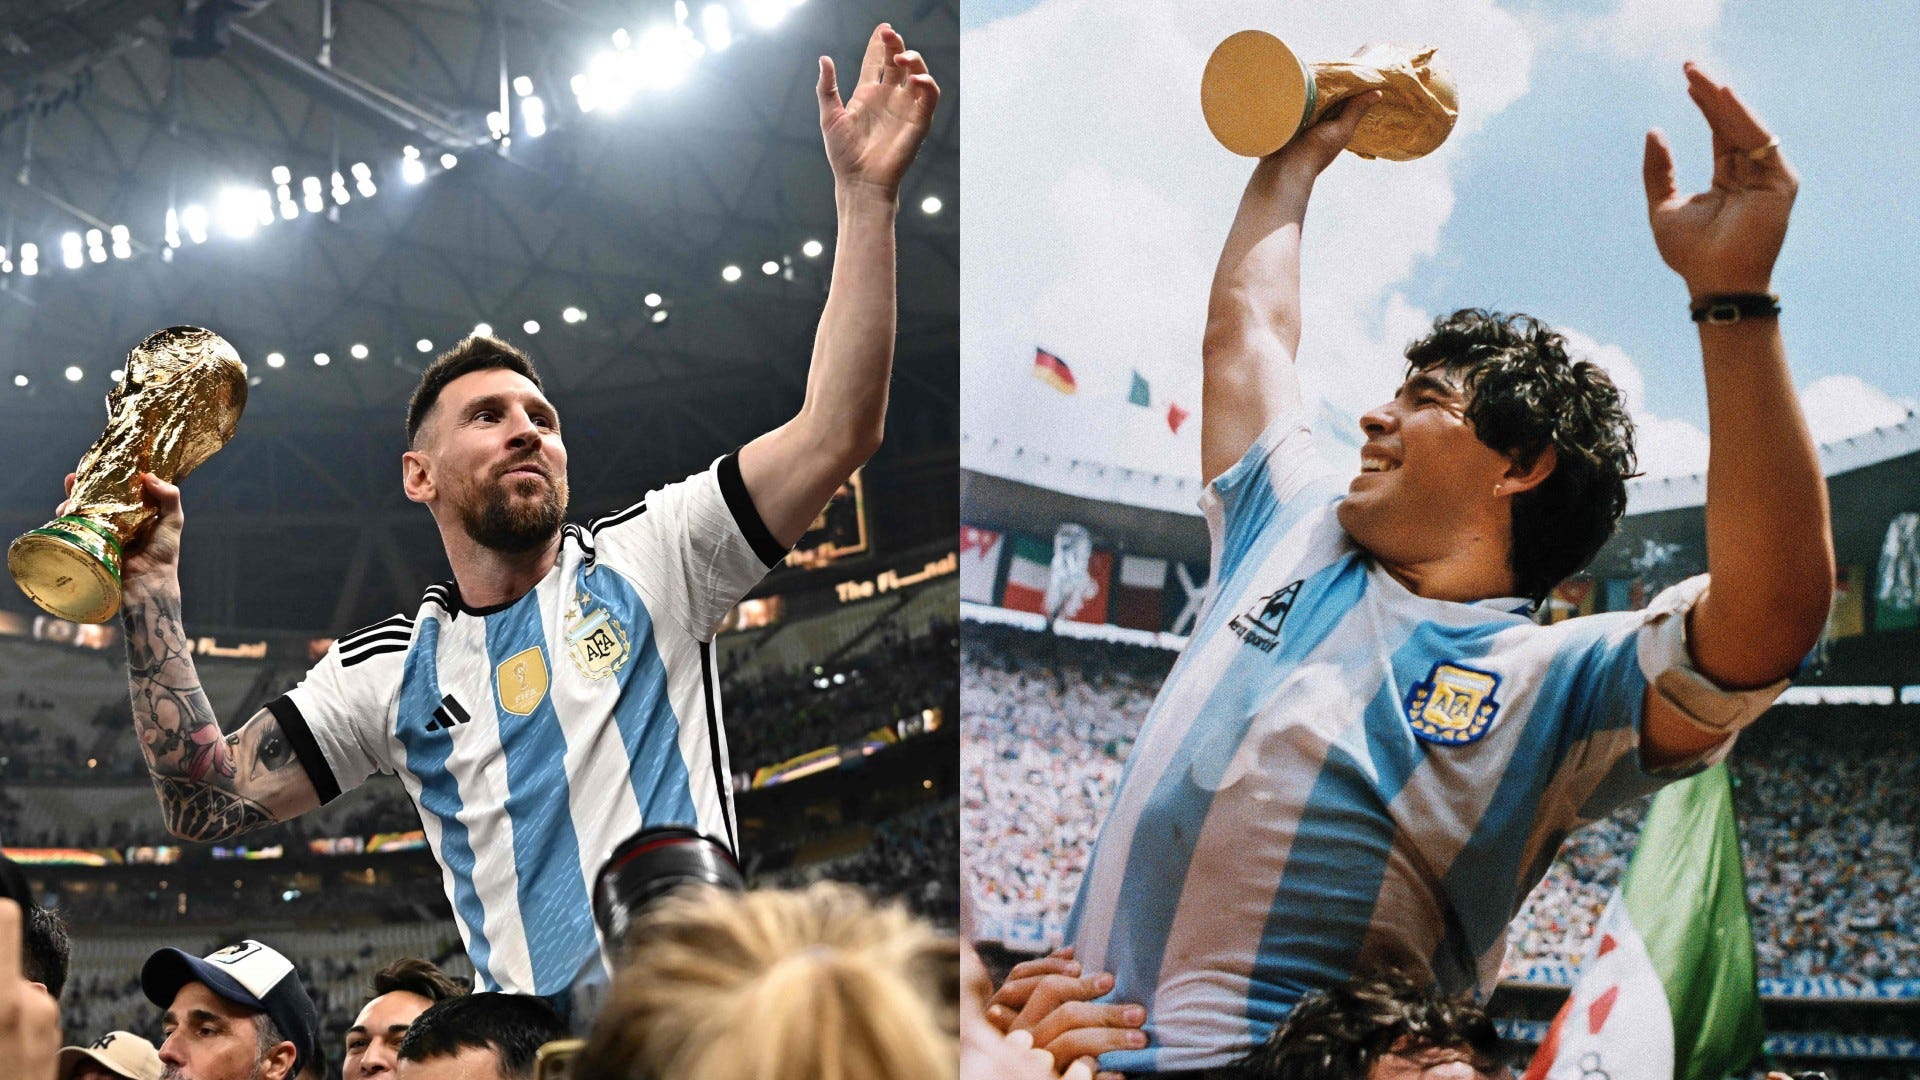 Maradona là huyền thoại bóng đá không thể không biết, hình ảnh về ông sẽ khiến bạn bị cuốn hút bởi kỹ năng đi bóng và những cú đá phạt khó tin của ông.